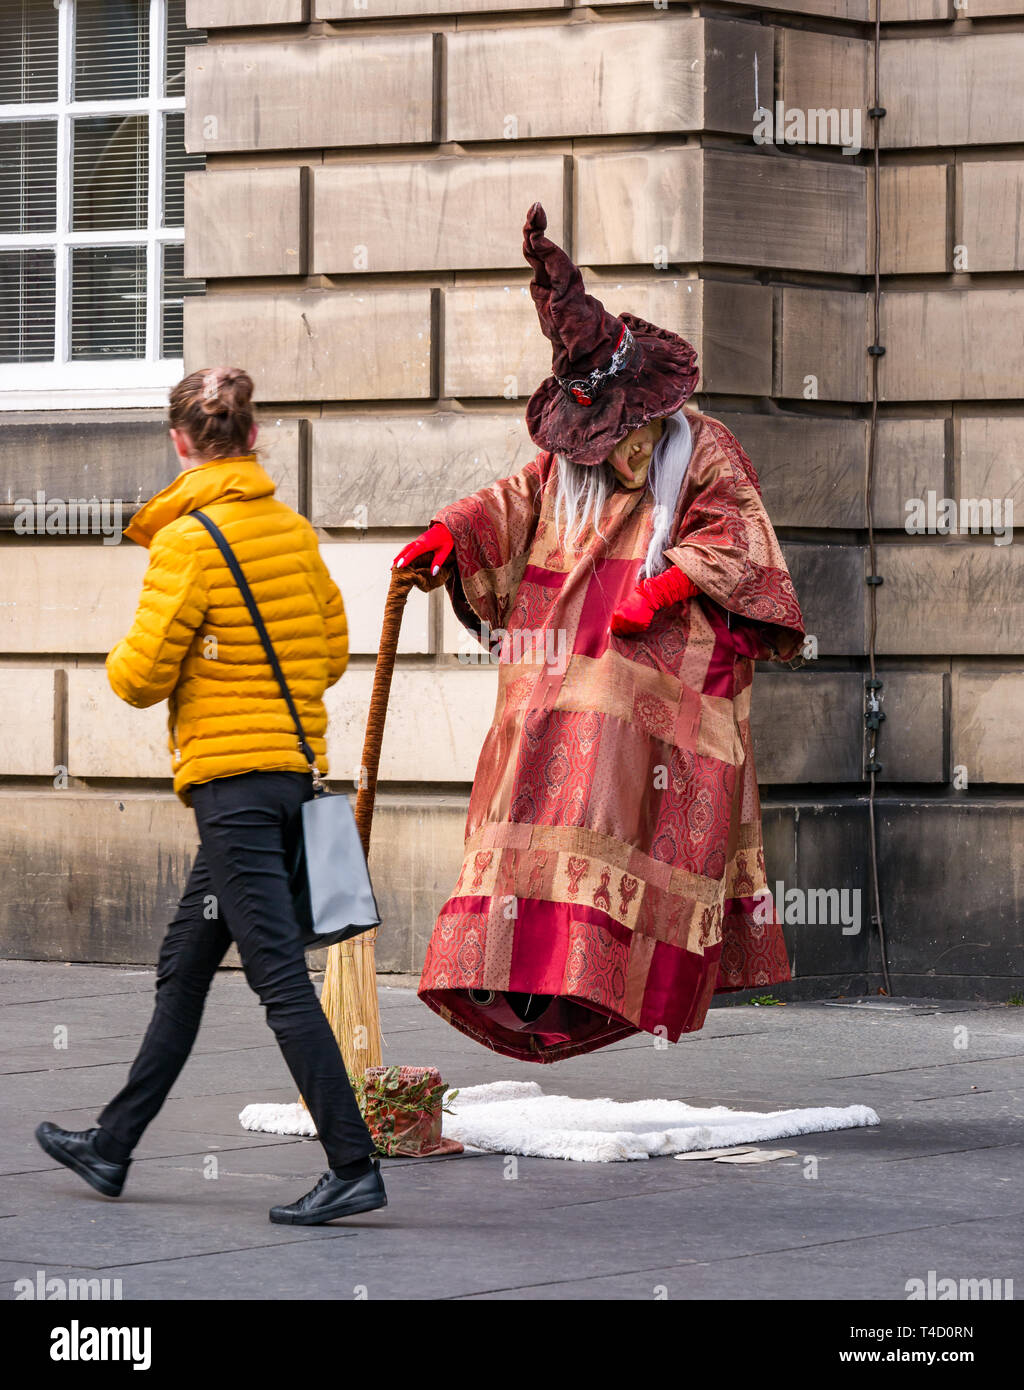 Frau vorbei gehen. Hexe und Besen levitation Street Performer lebende Statue handeln, Royal Mile, Edinburgh, Schottland, Großbritannien Stockfoto